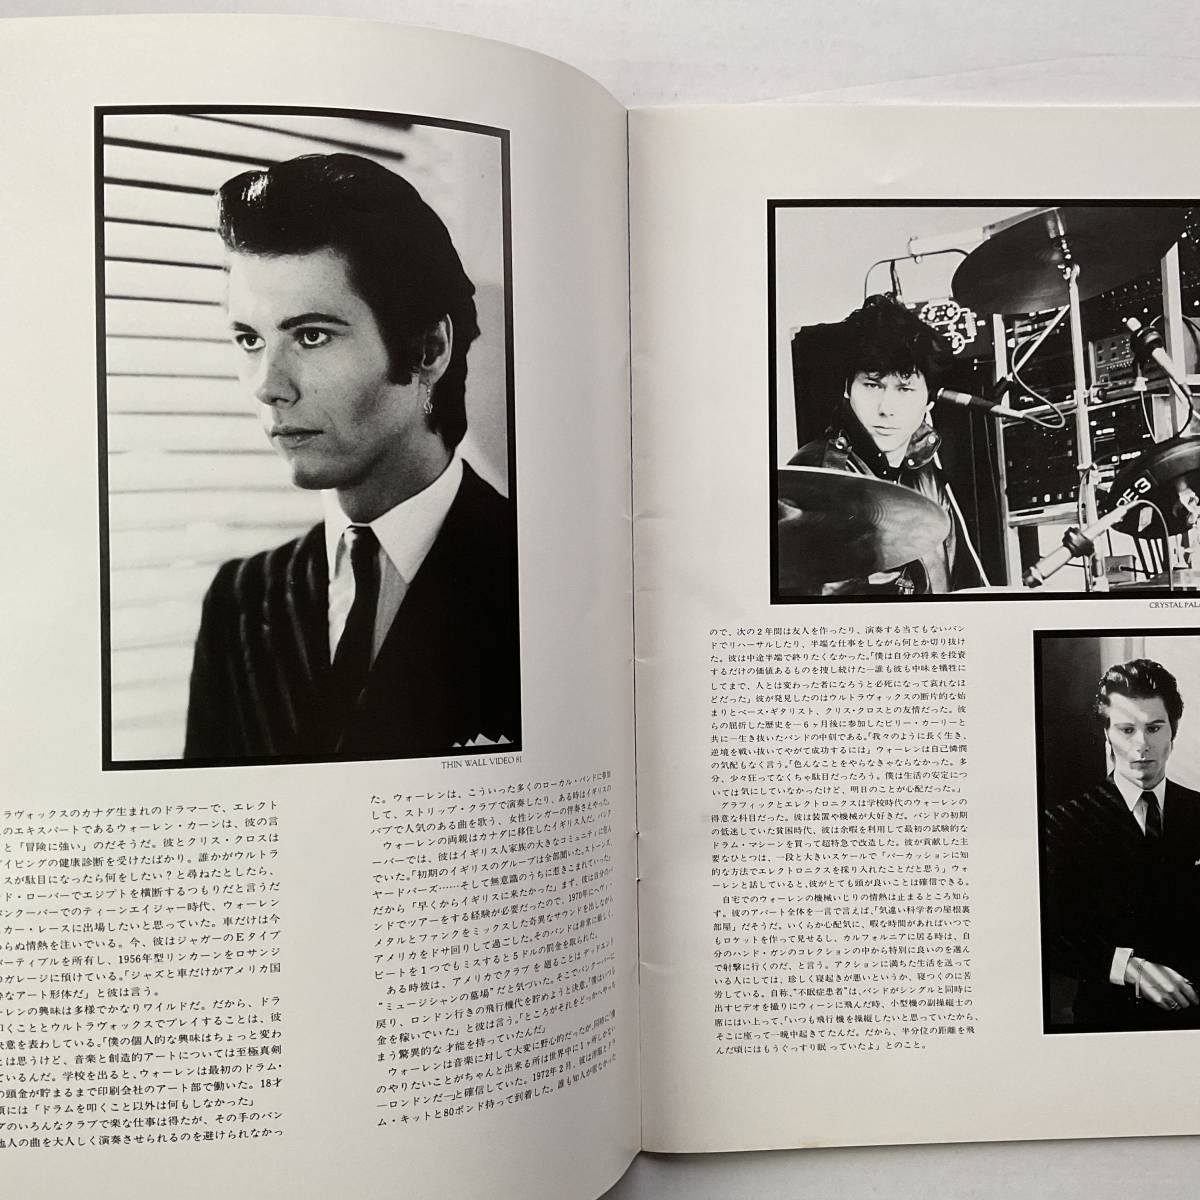 ウルトラヴォックス 日本公演 パンフレット 1982 Ultravox JAPAN TOUR BOOK MIDGE URE 写真集 ストーリー_画像8